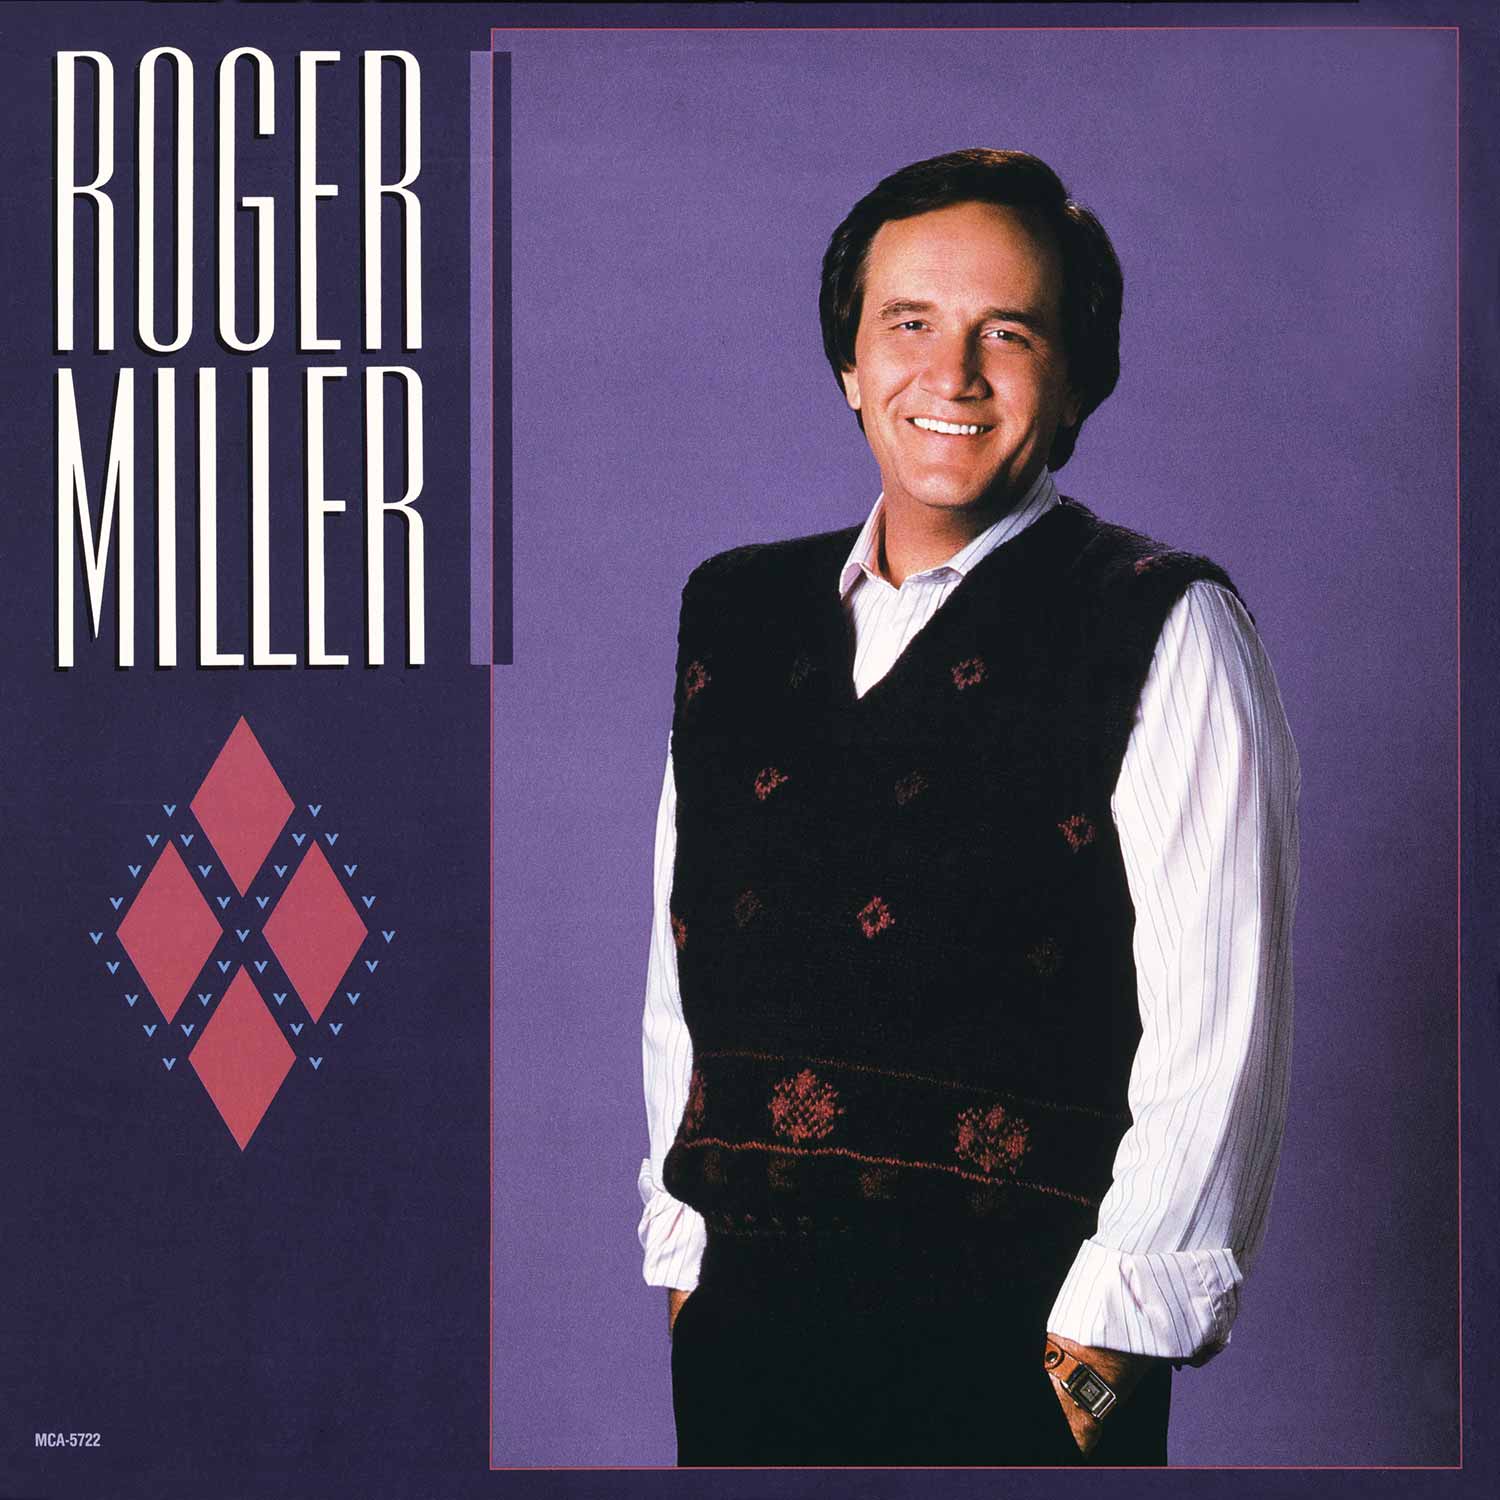 Roger Miller 1986 album cover